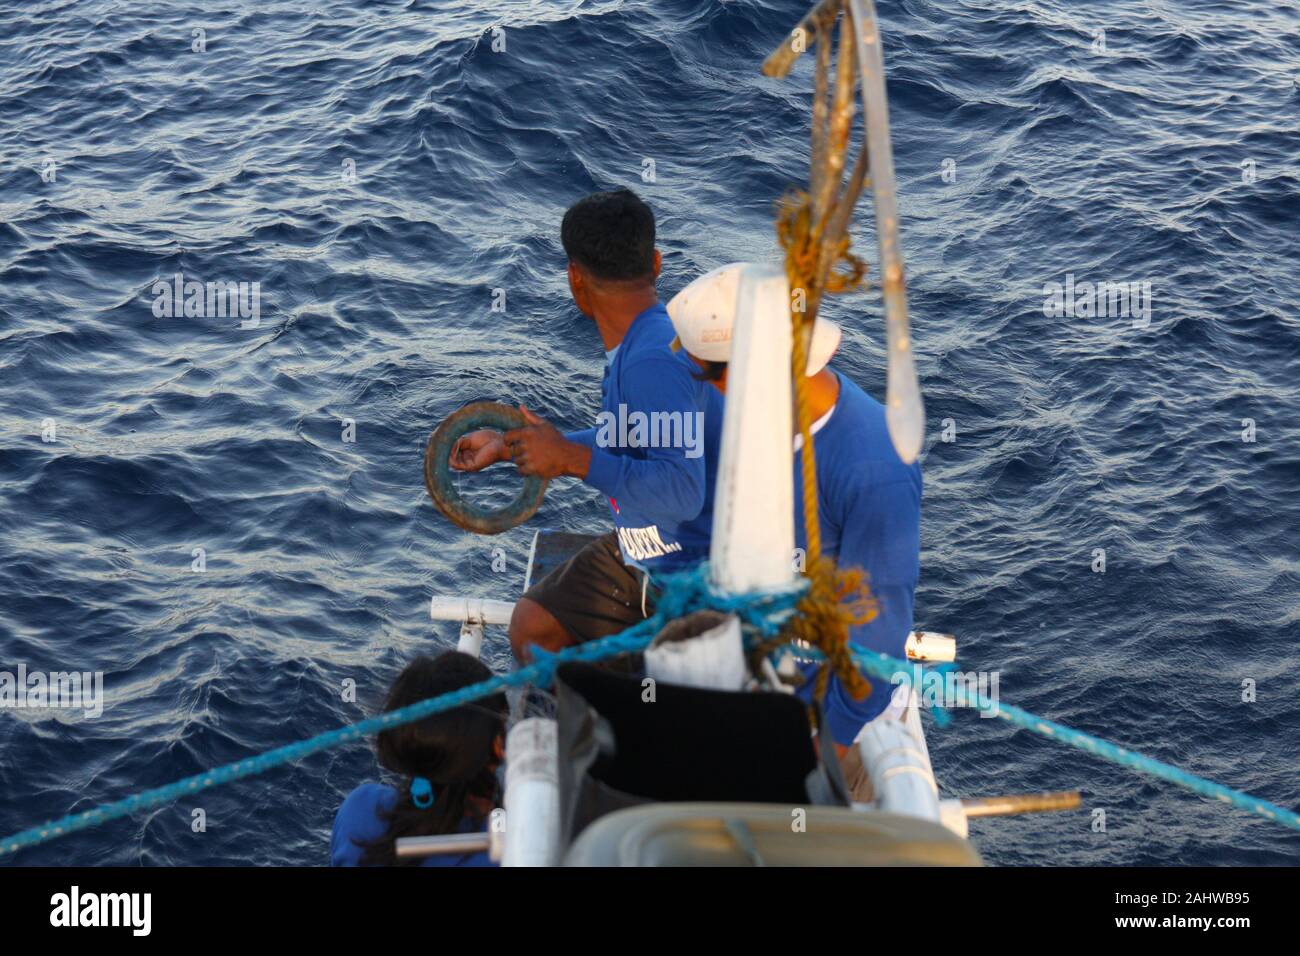 Artisanal yellowfin tuna handline fishing in the waters of Mindoro